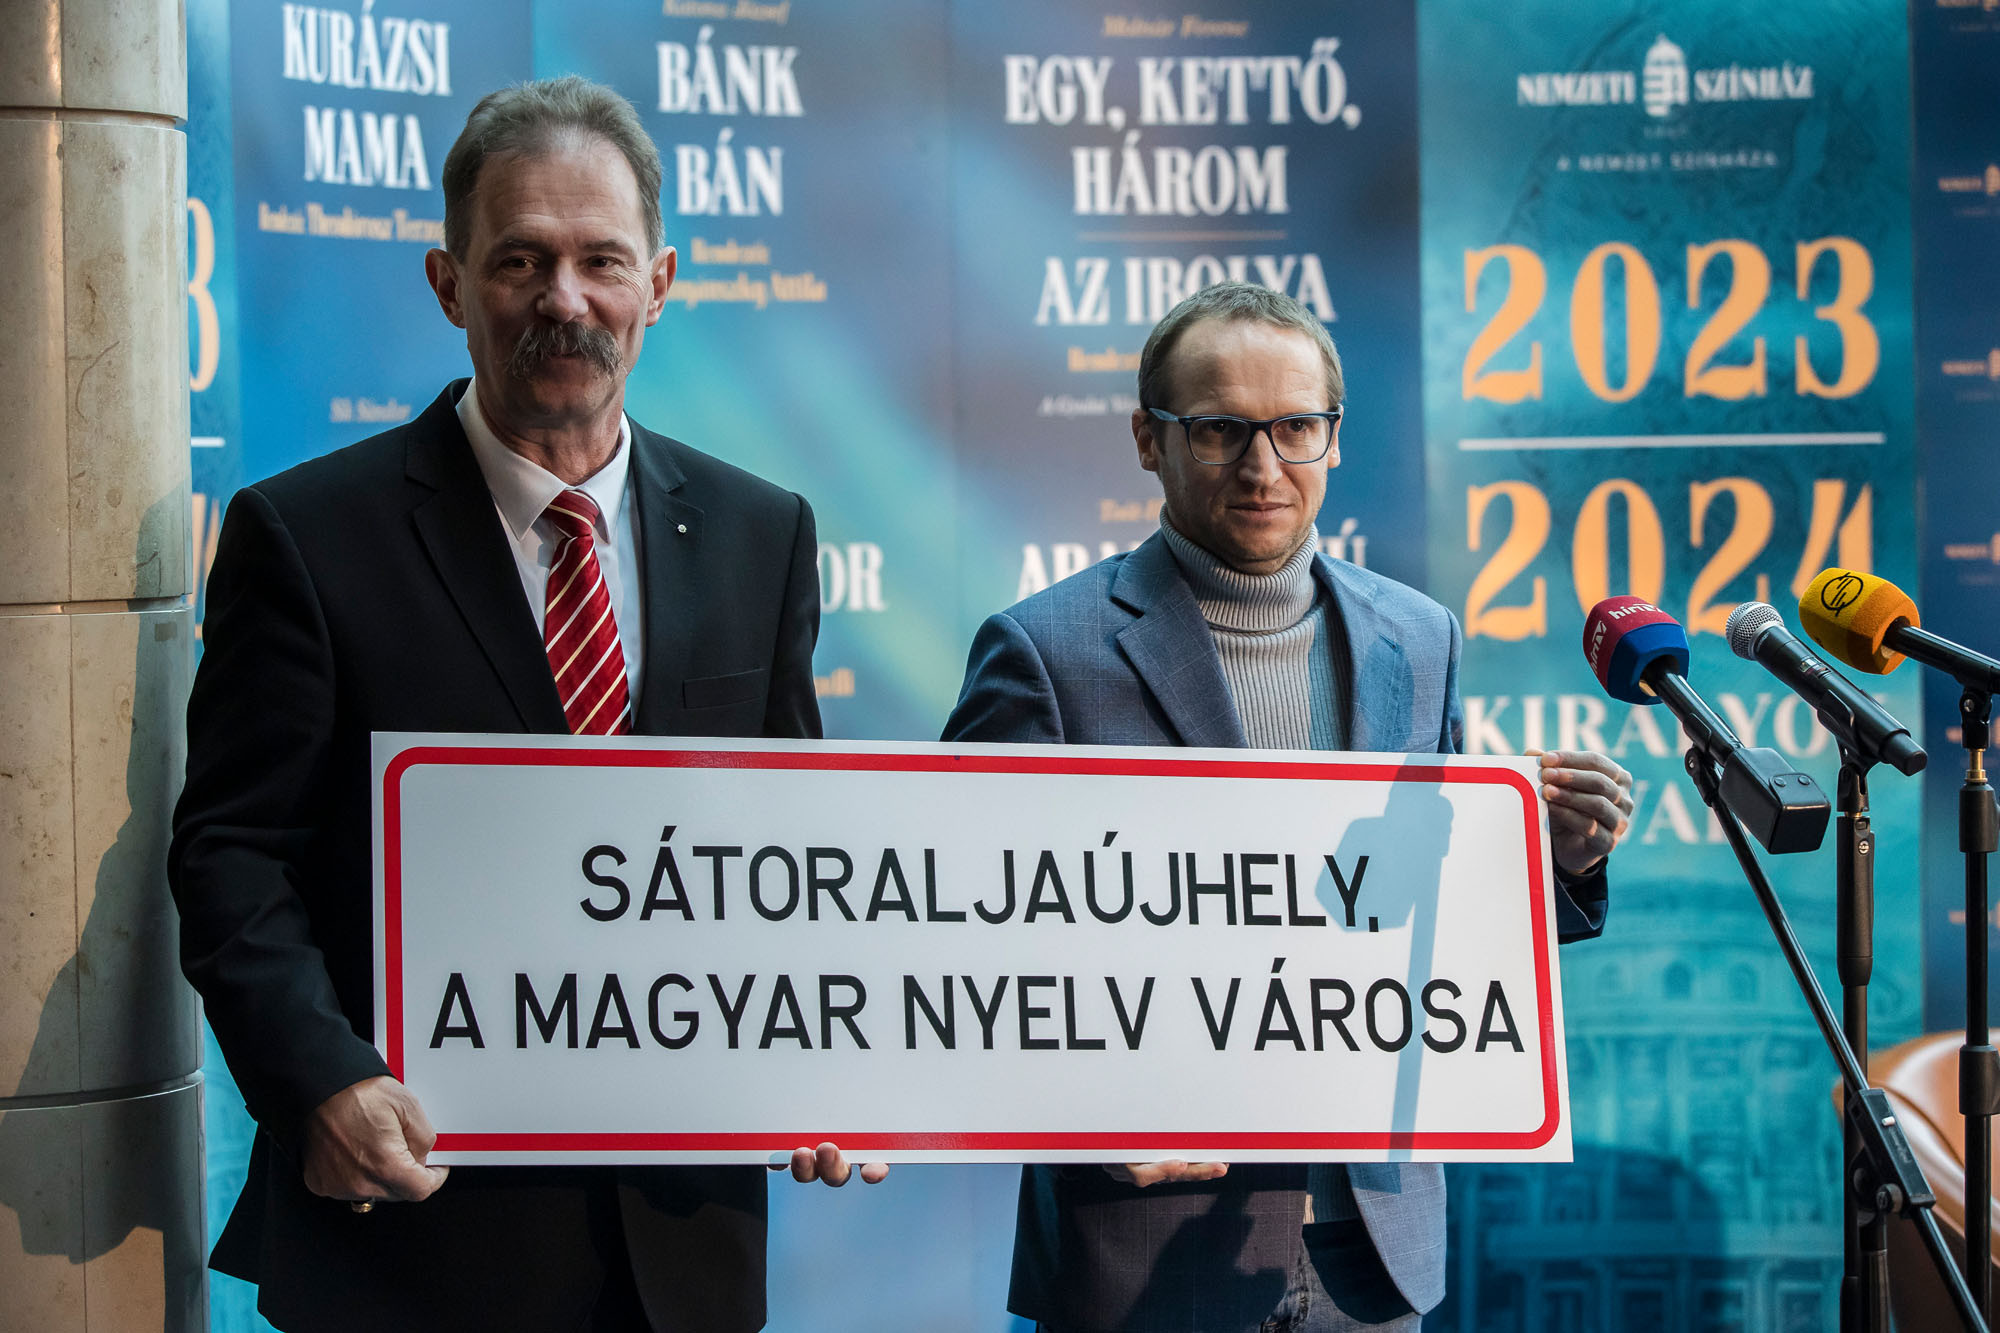 A magyar nyelvet ünnepli a közmédia